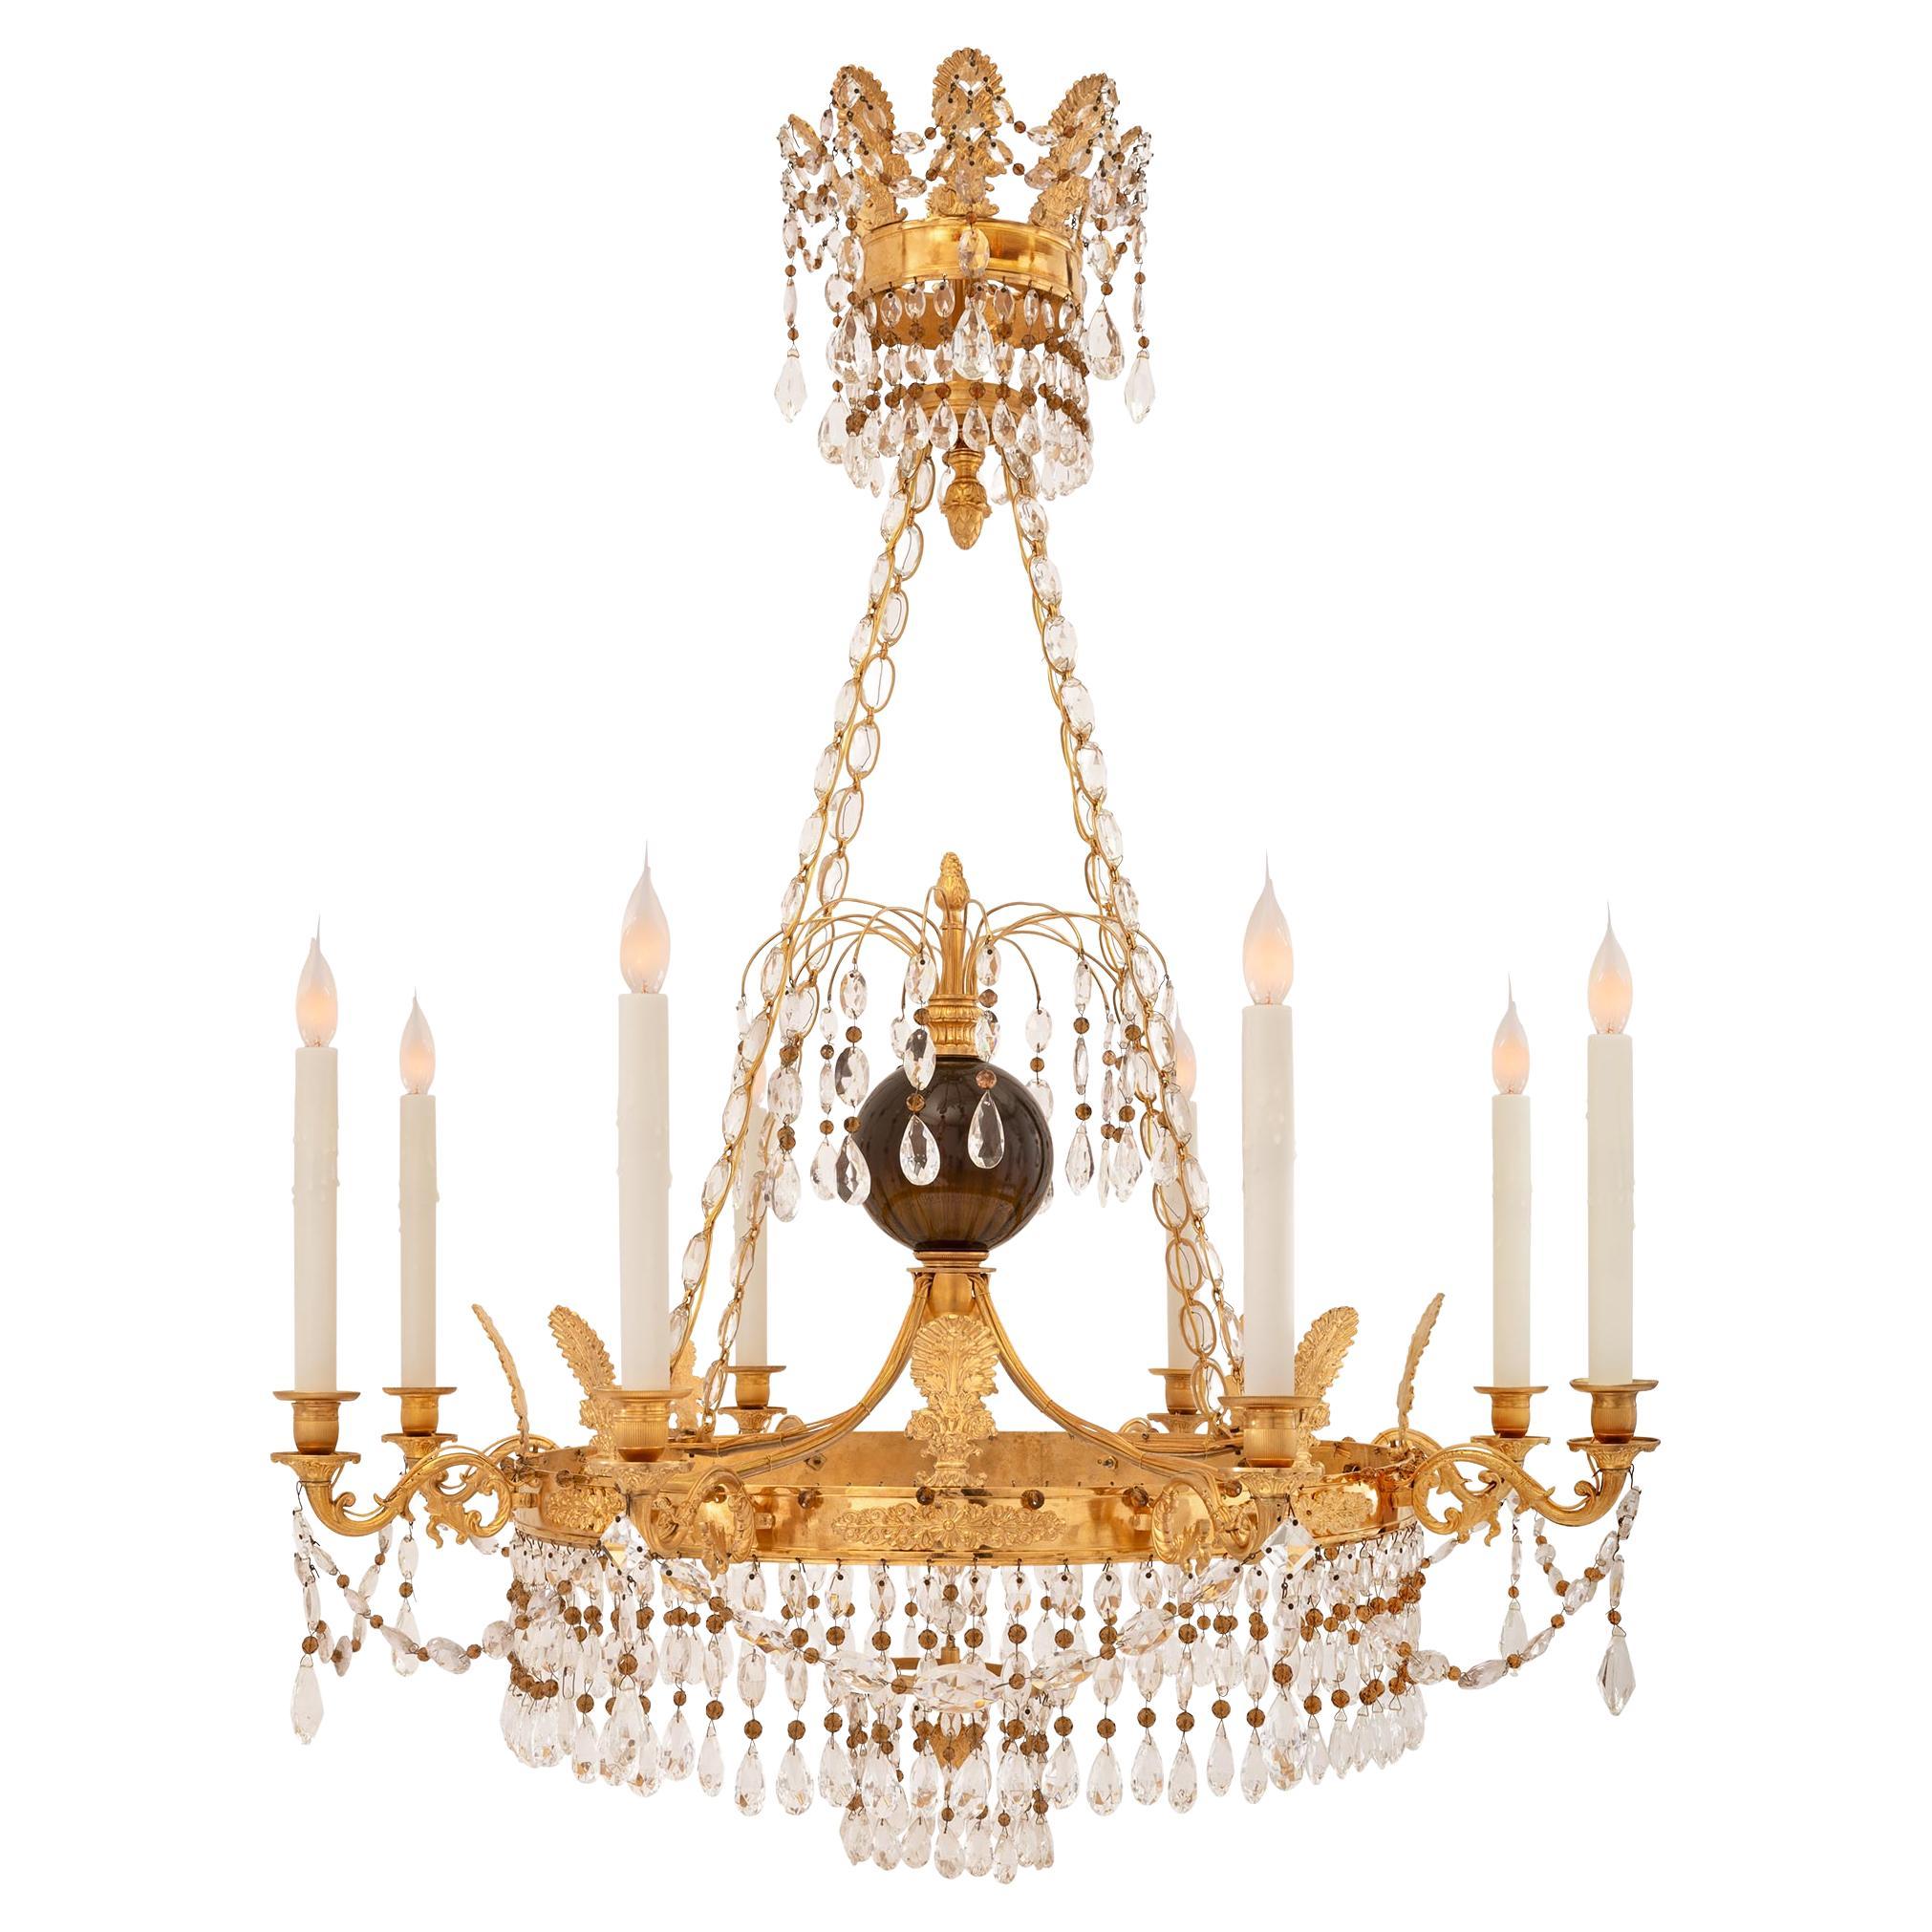 Balticer neoklassischer Kronleuchter aus Goldbronze, Kristall und Glas aus dem 19. Jahrhundert